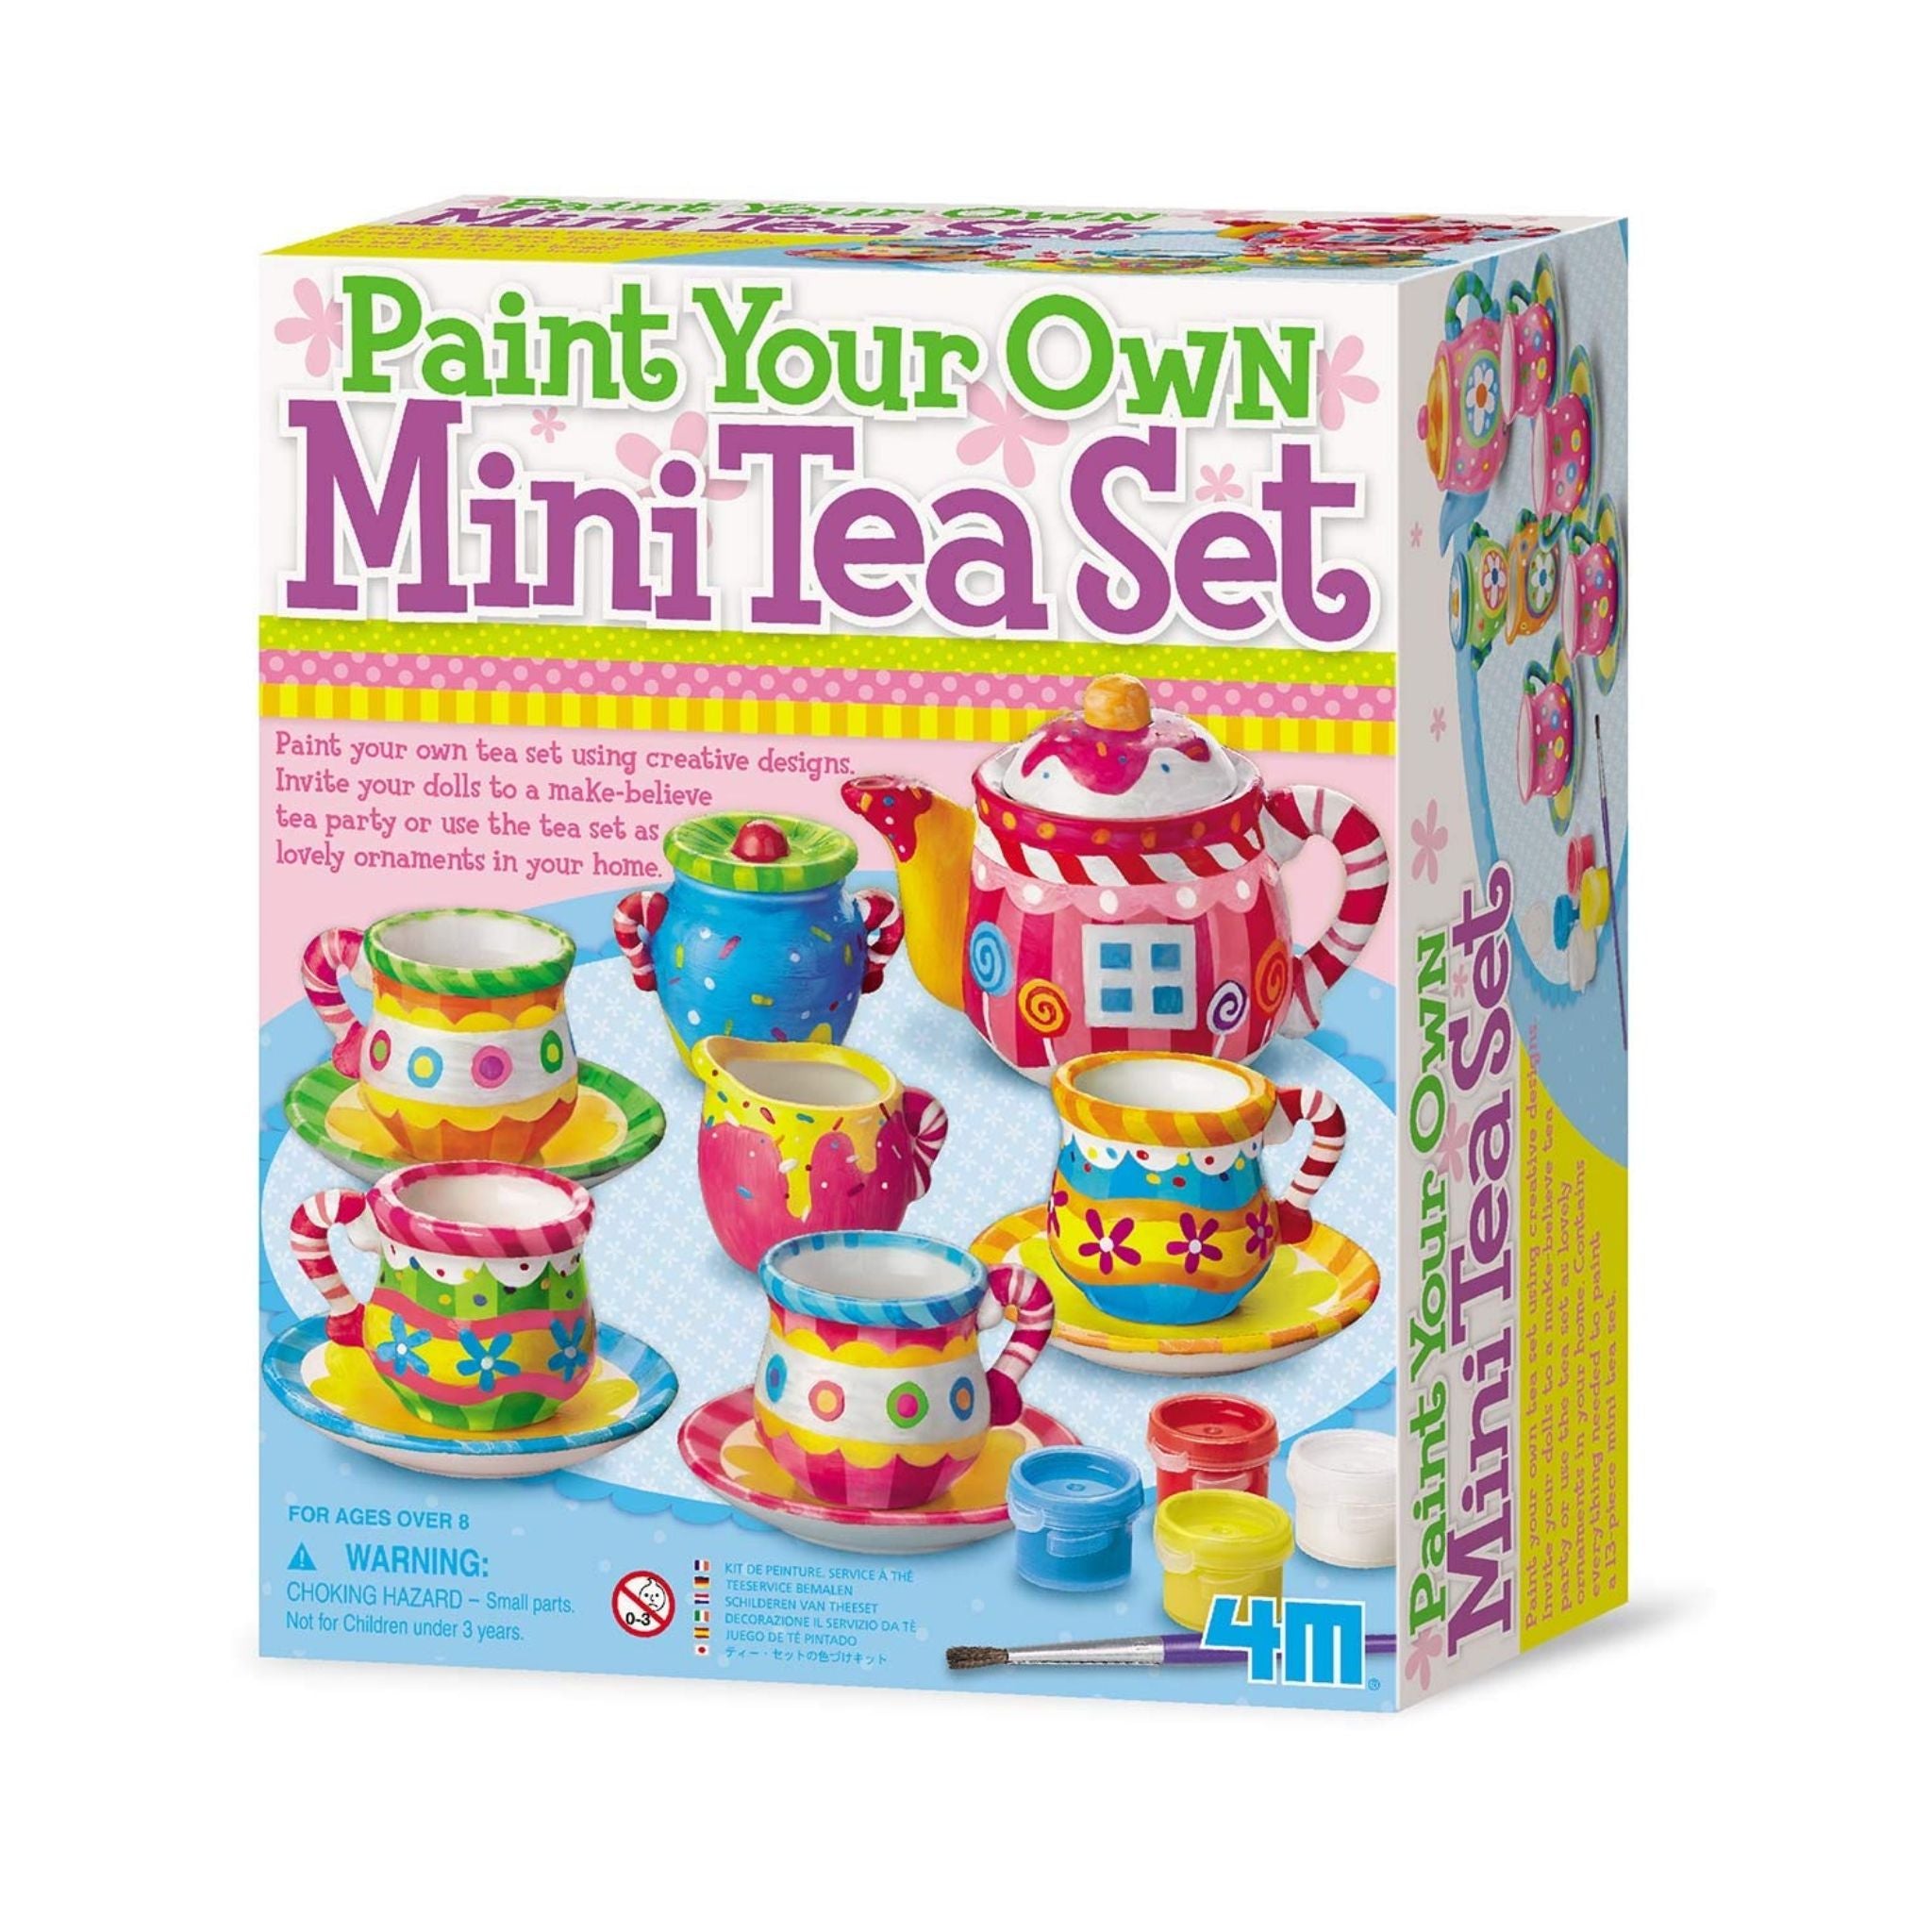 4M Paint Your Own Mini Tea Set